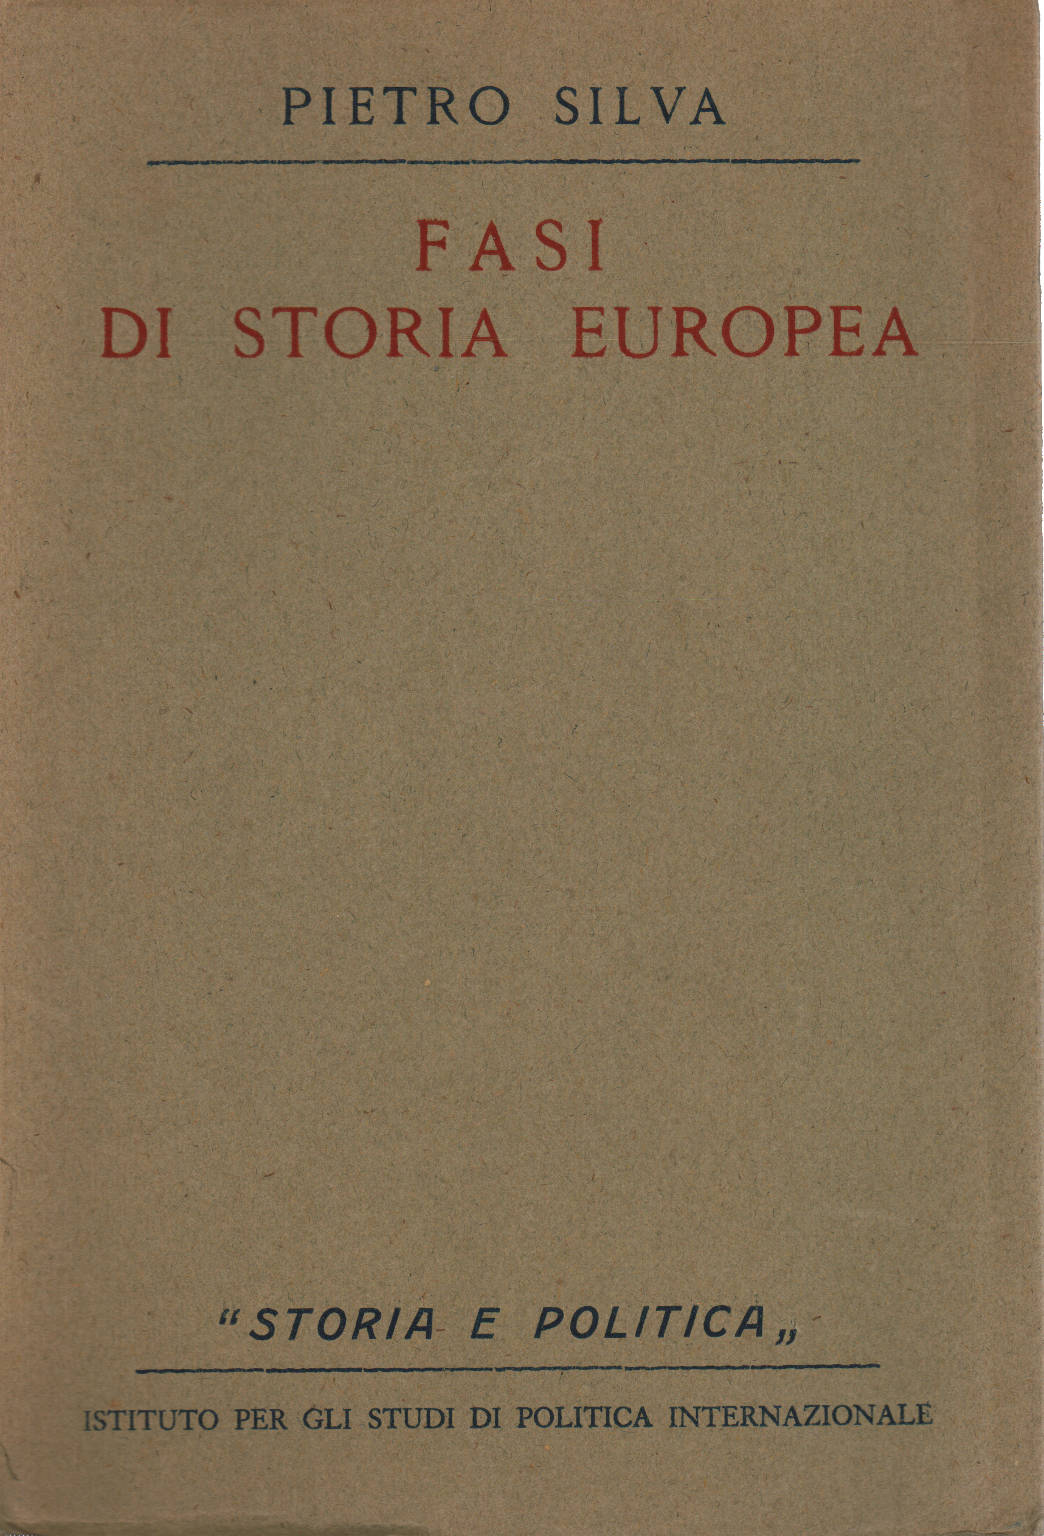 Phases de l'histoire européenne, Pietro Silva